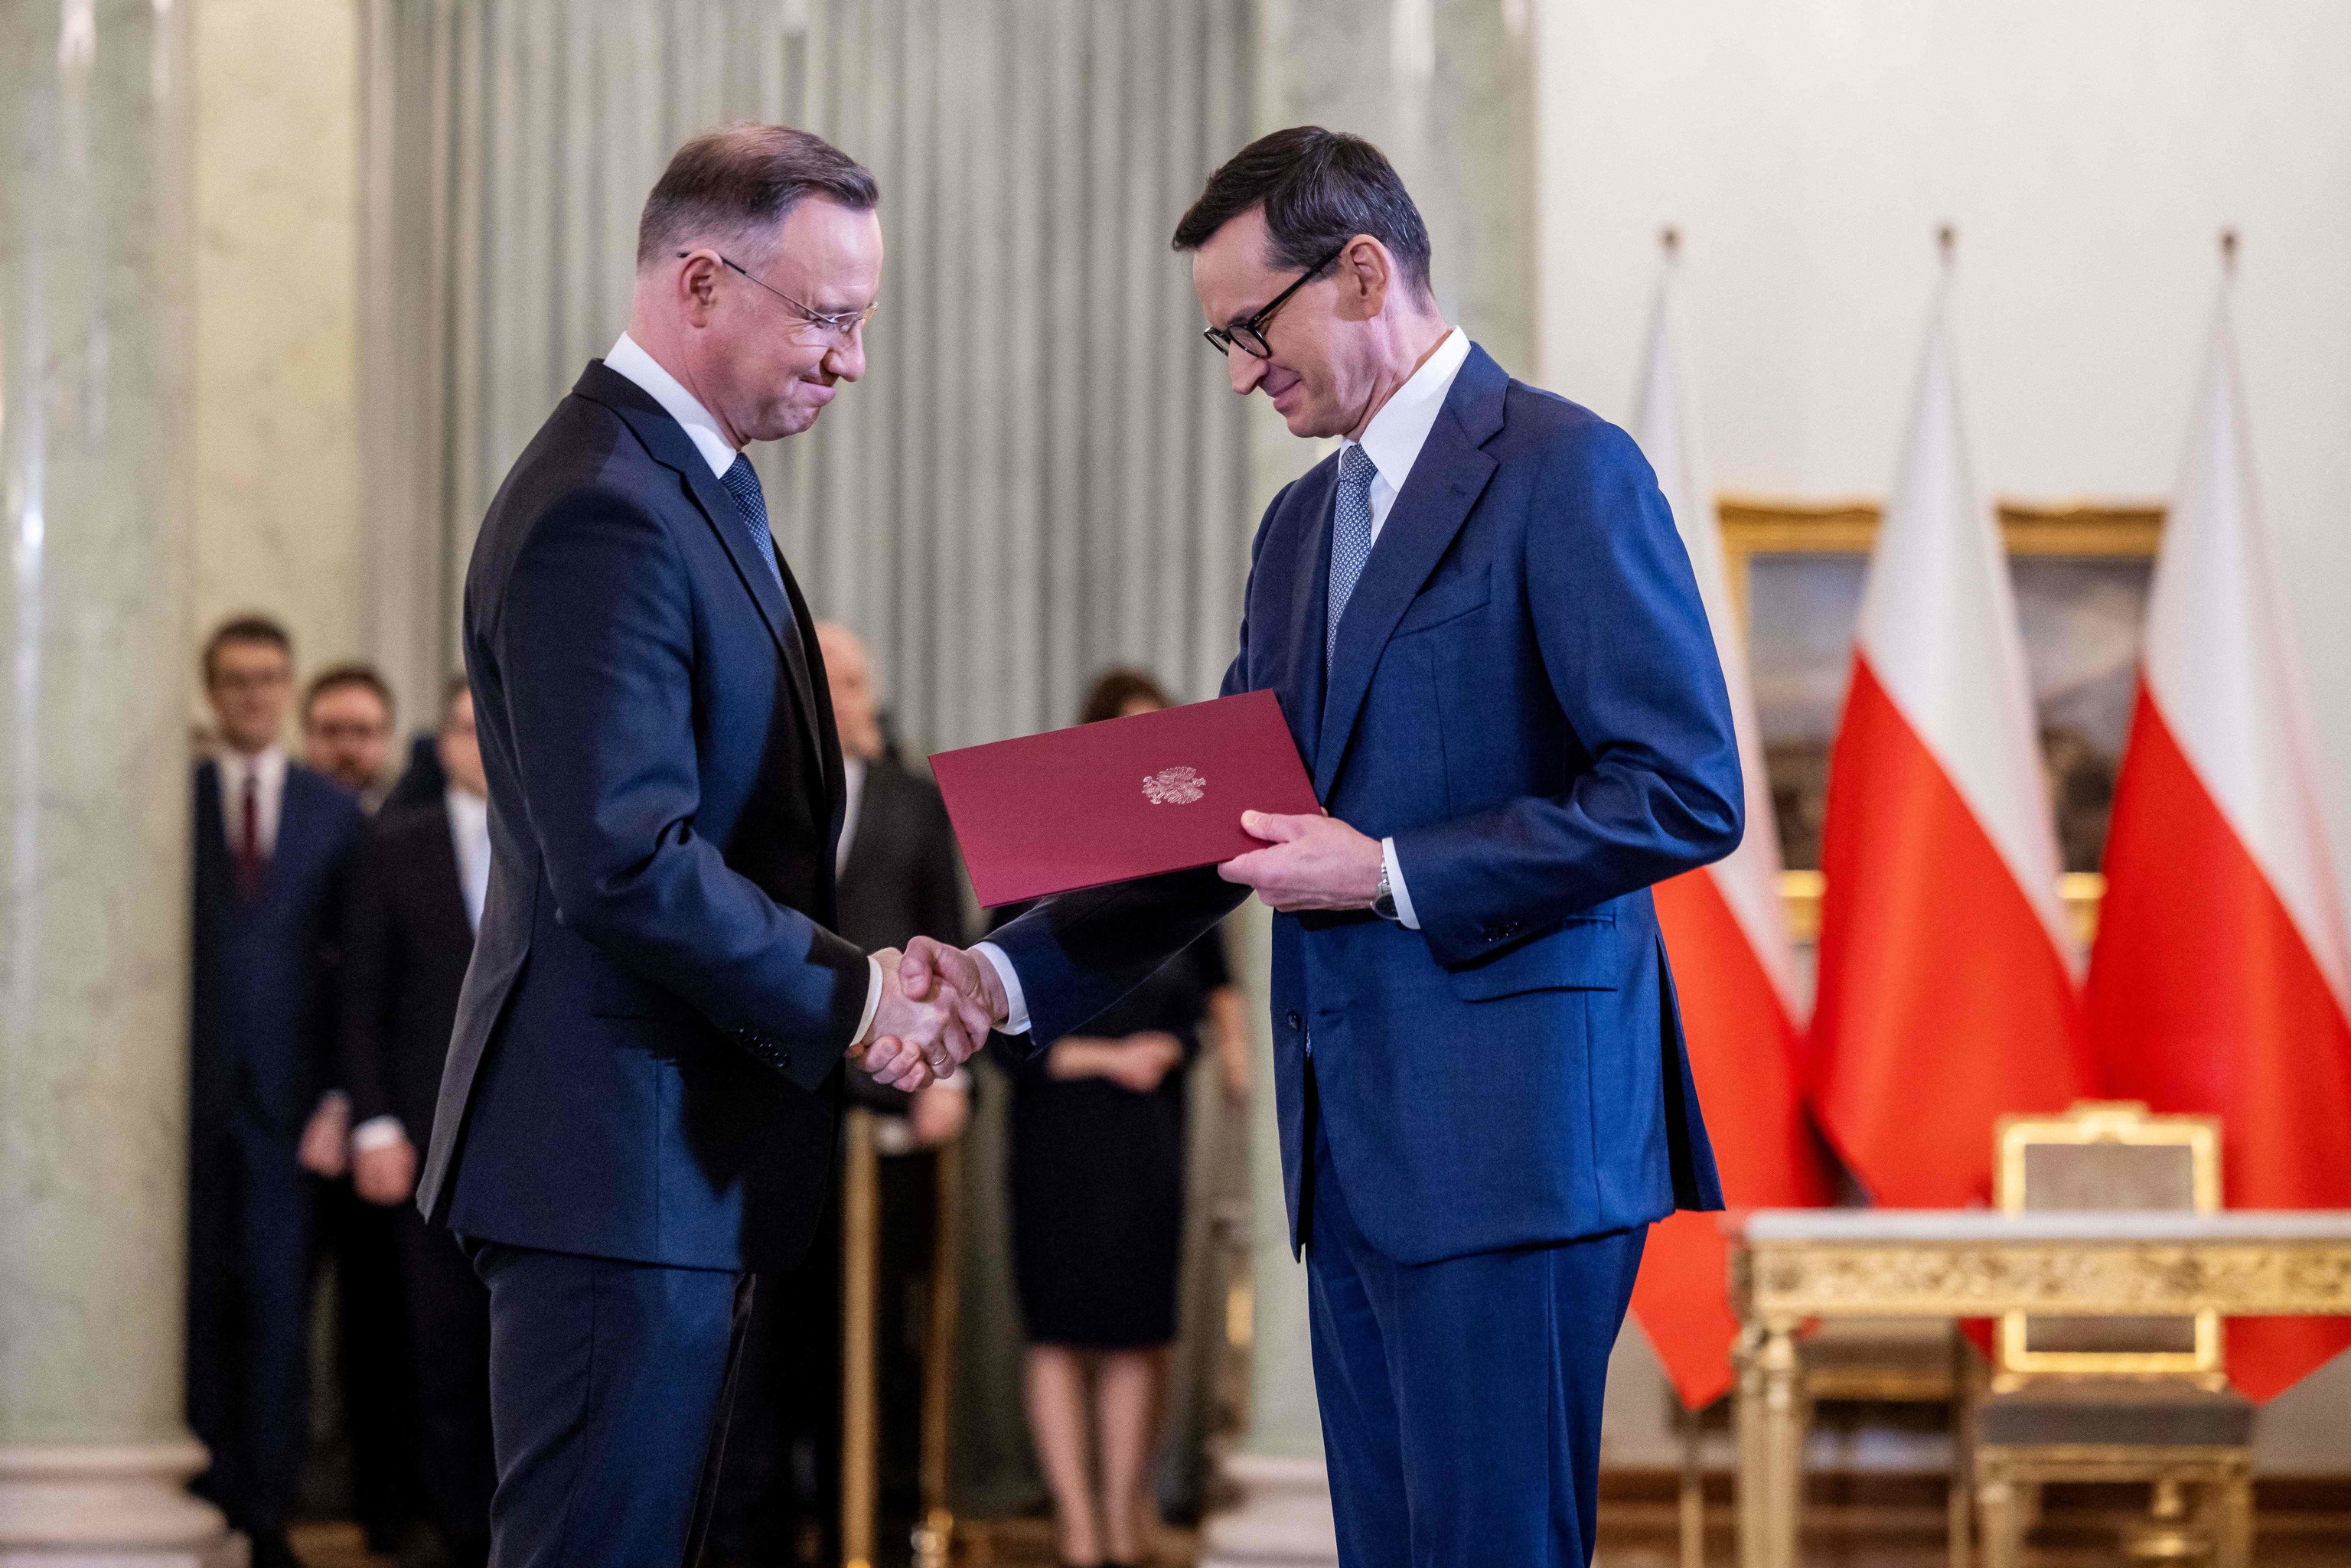 El presidente polaco junto al primer ministro entrante y saliente.